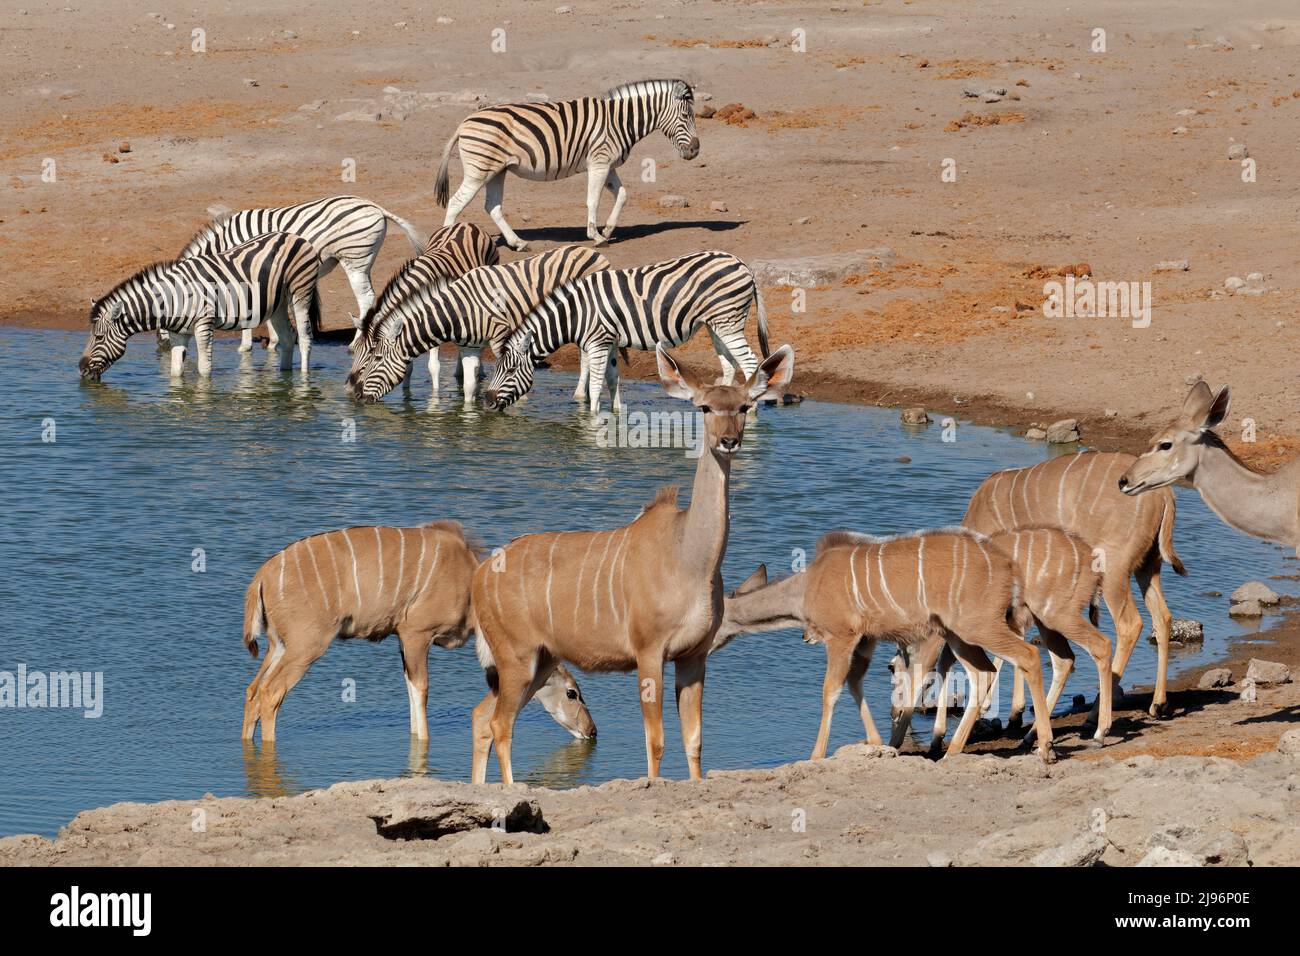 Kudu antelopes and plains zebras at a waterhole, Etosha National Park, Namibia Stock Photo